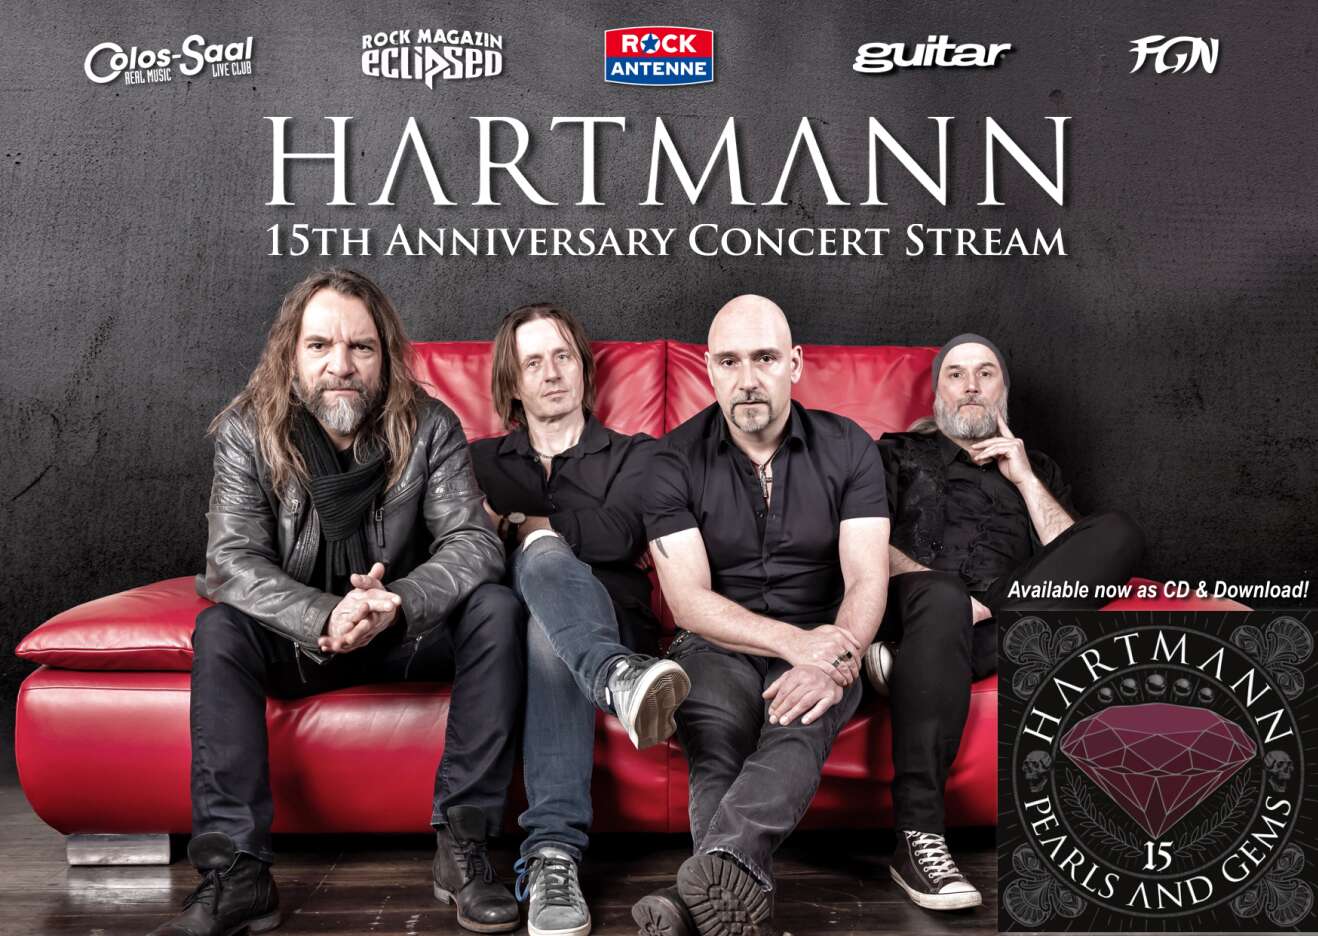 Bandmitglieder von Hartmann sitzen auf roter Couch